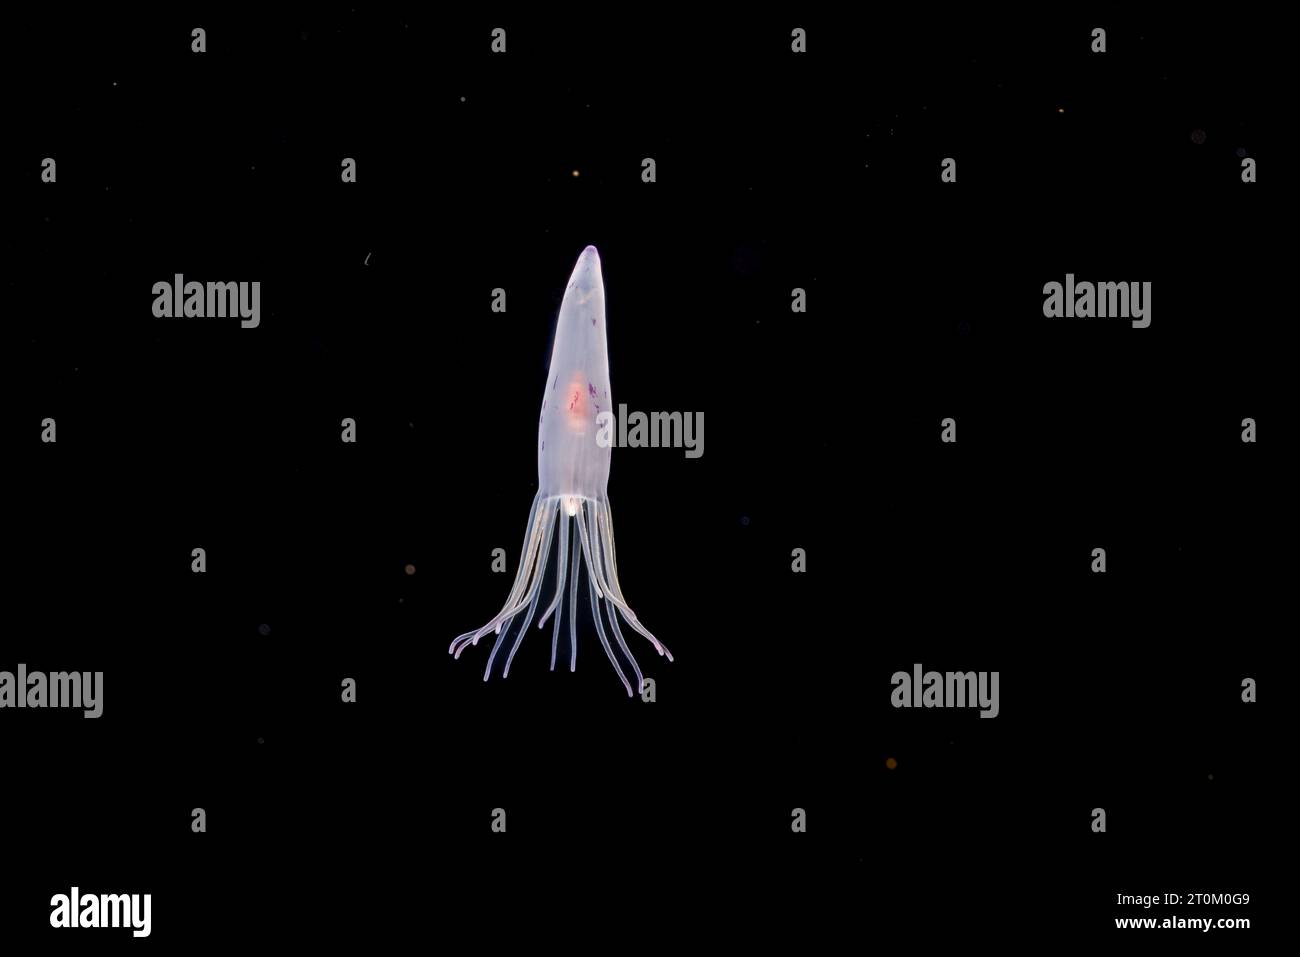 La fase larvale di un tubo anemone, Cerianthus sp, probabilmente circa trenta giorni di età a questo punto. Esso si depositano sul fondo a circa 100 giorni. Ph Foto Stock